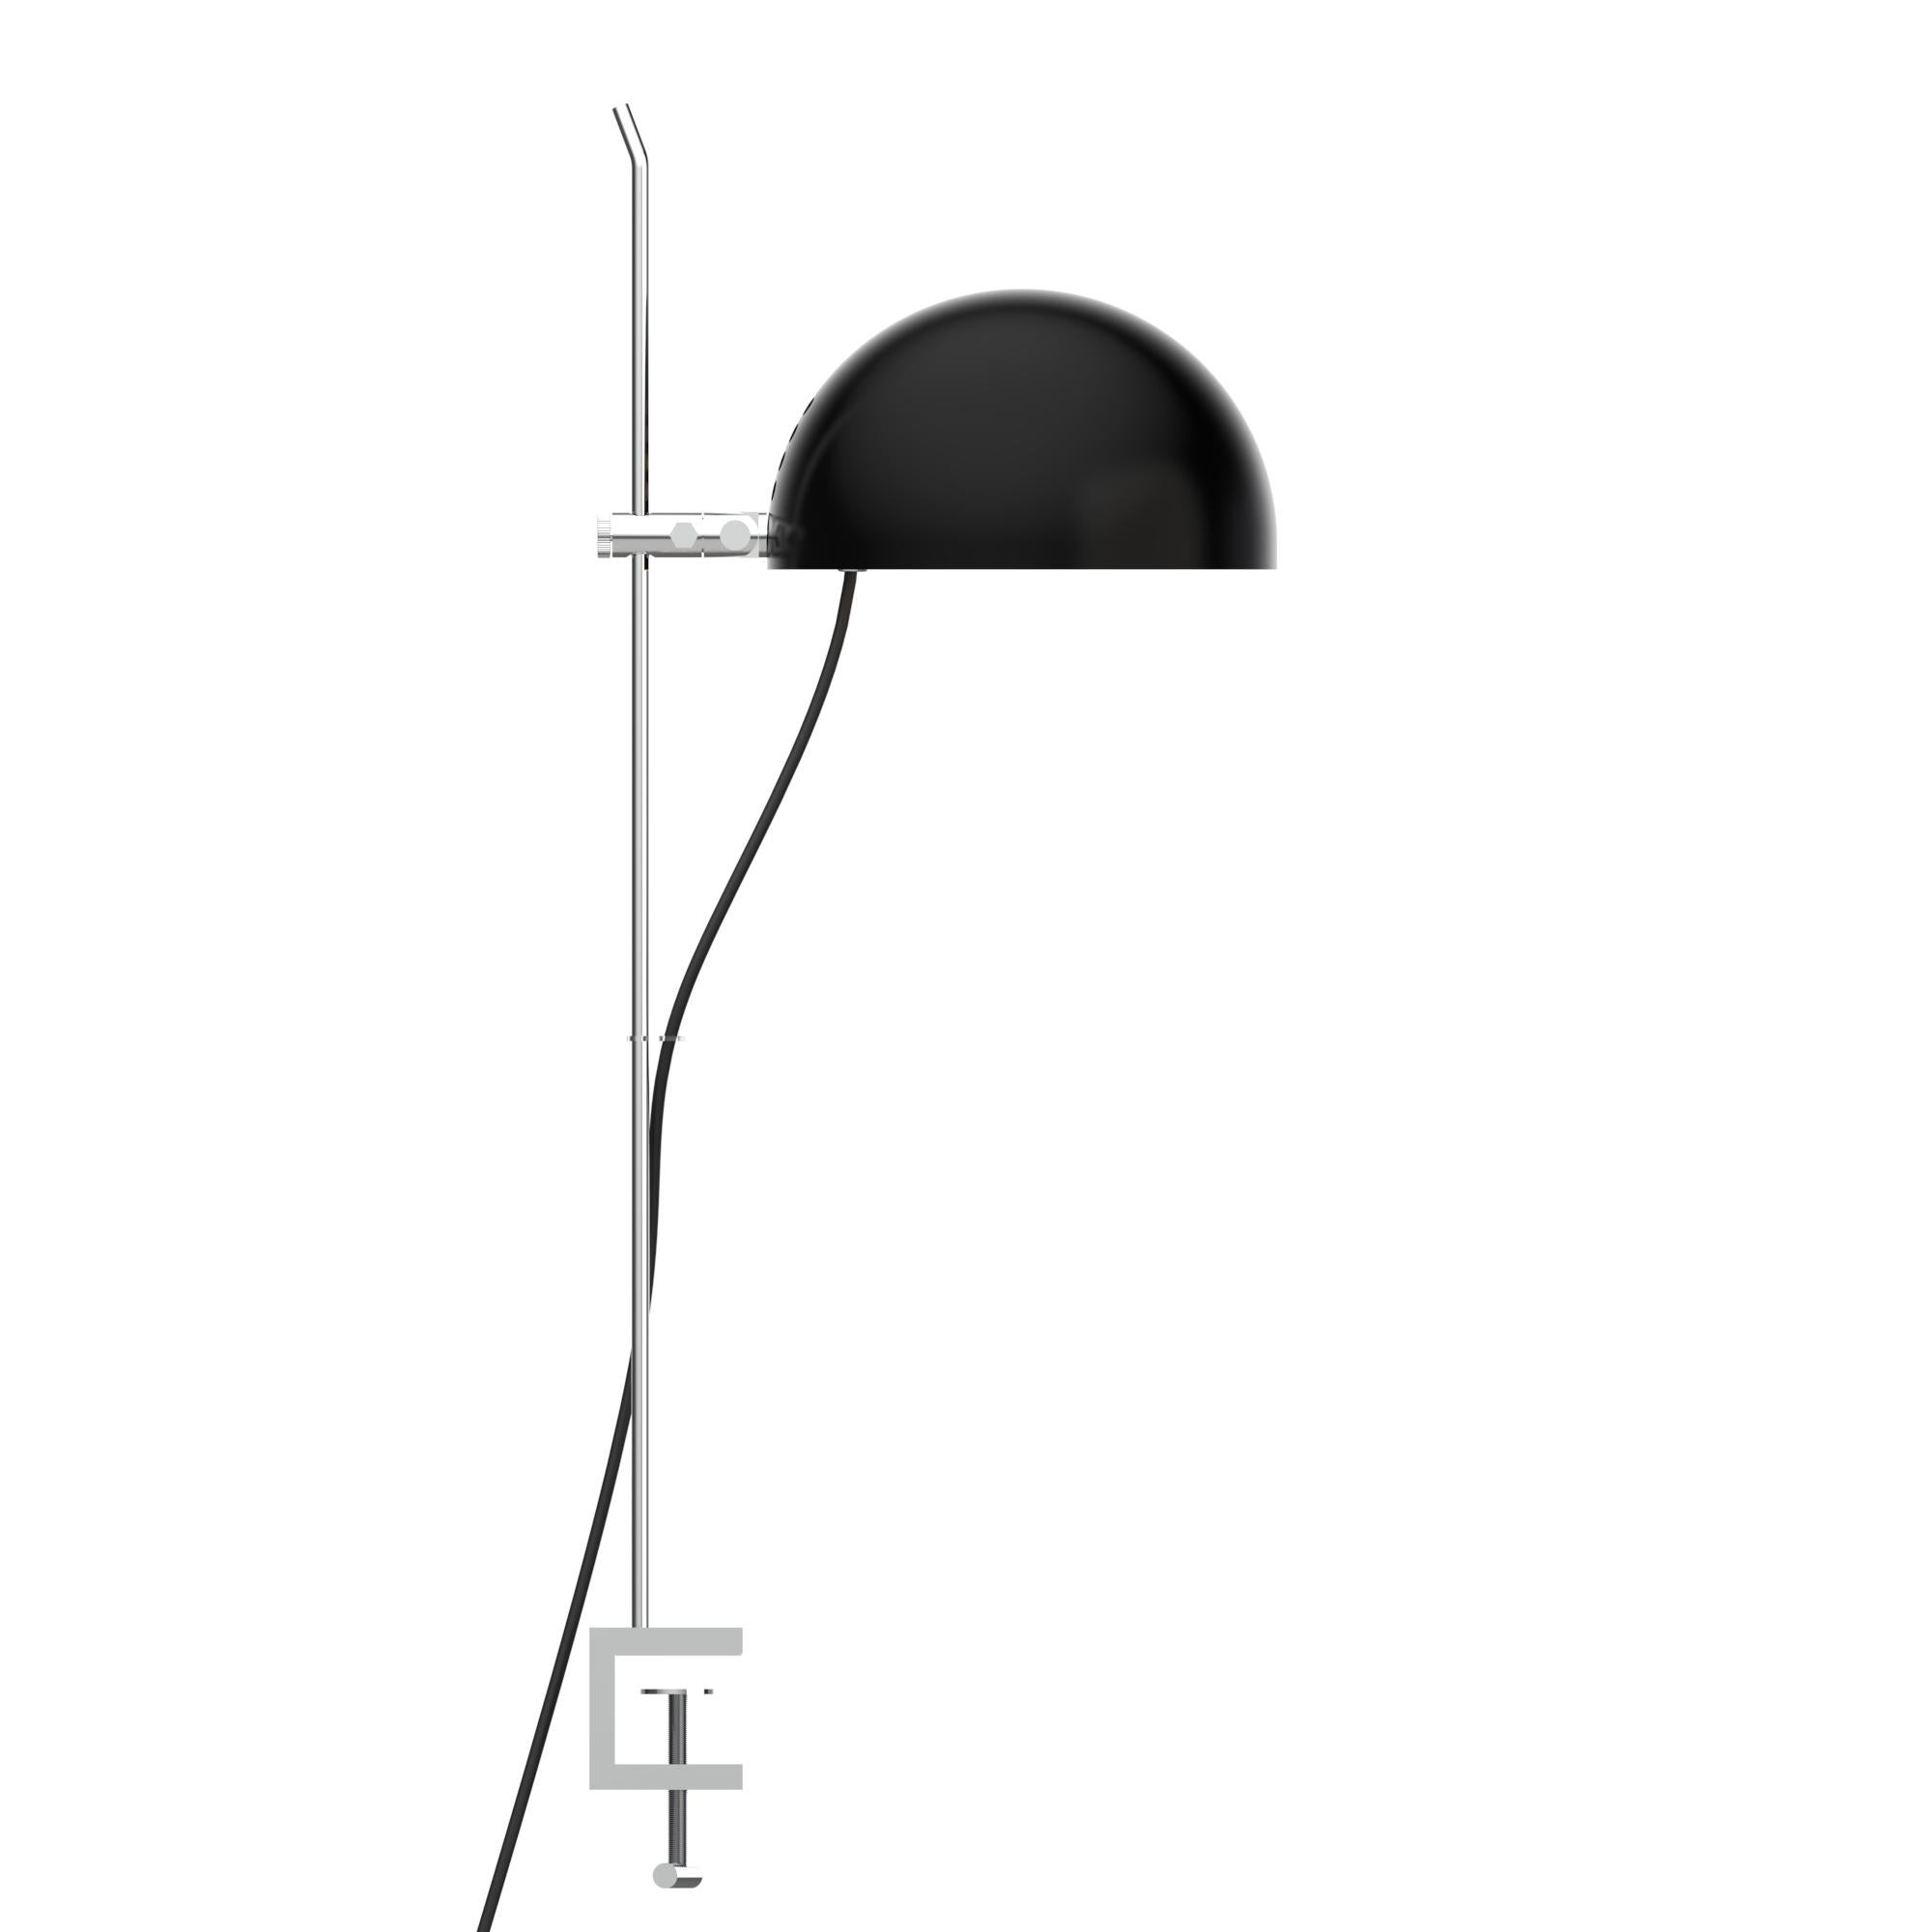 Alain Richard 'A22' Desk Lamp in Orange for Disderot For Sale 8